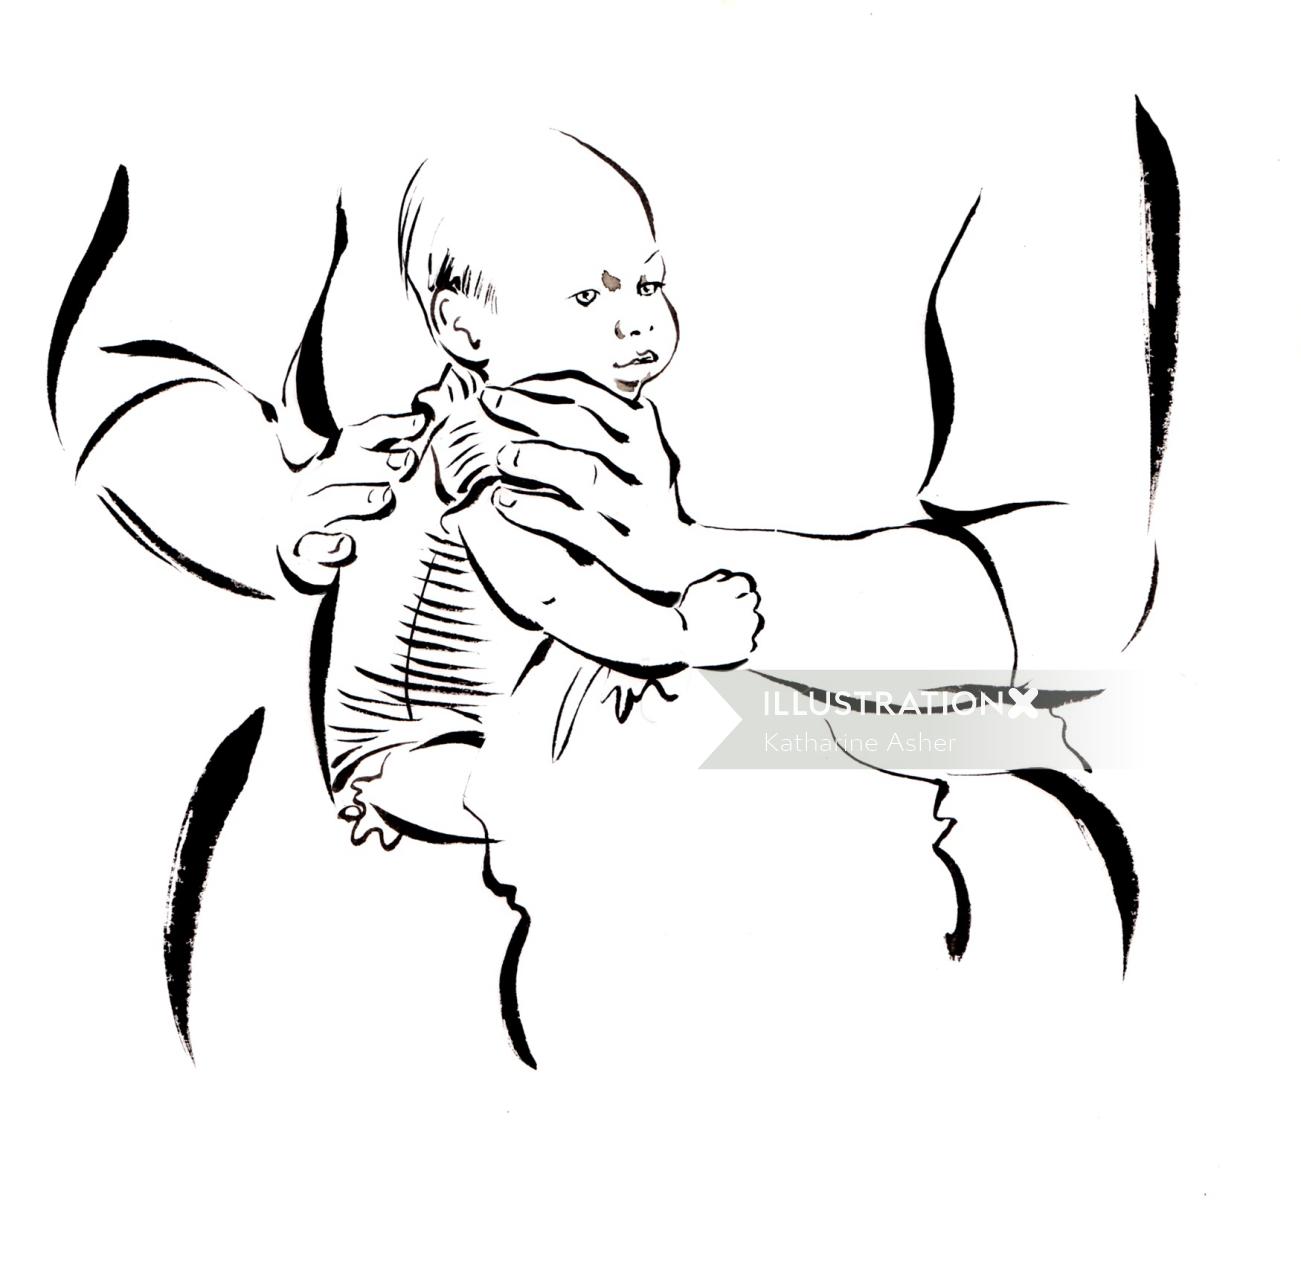 Mère tenant bébé illustration par Katharine Asher